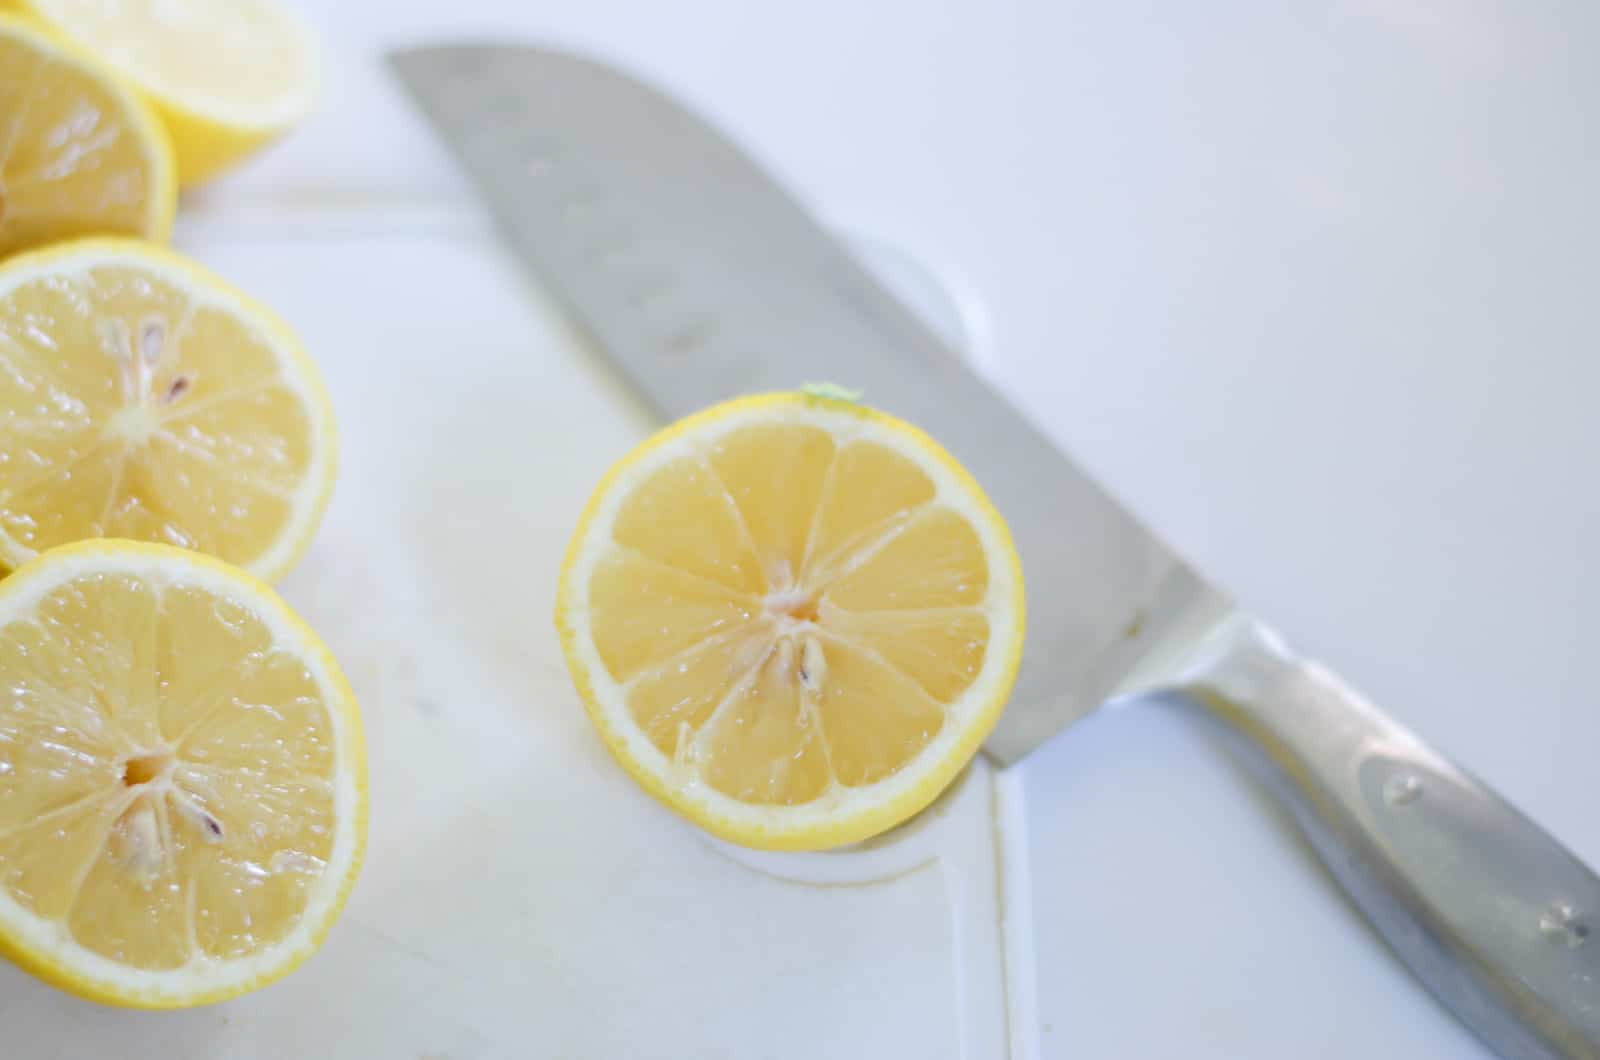 use fresh lemons for lemonade sale